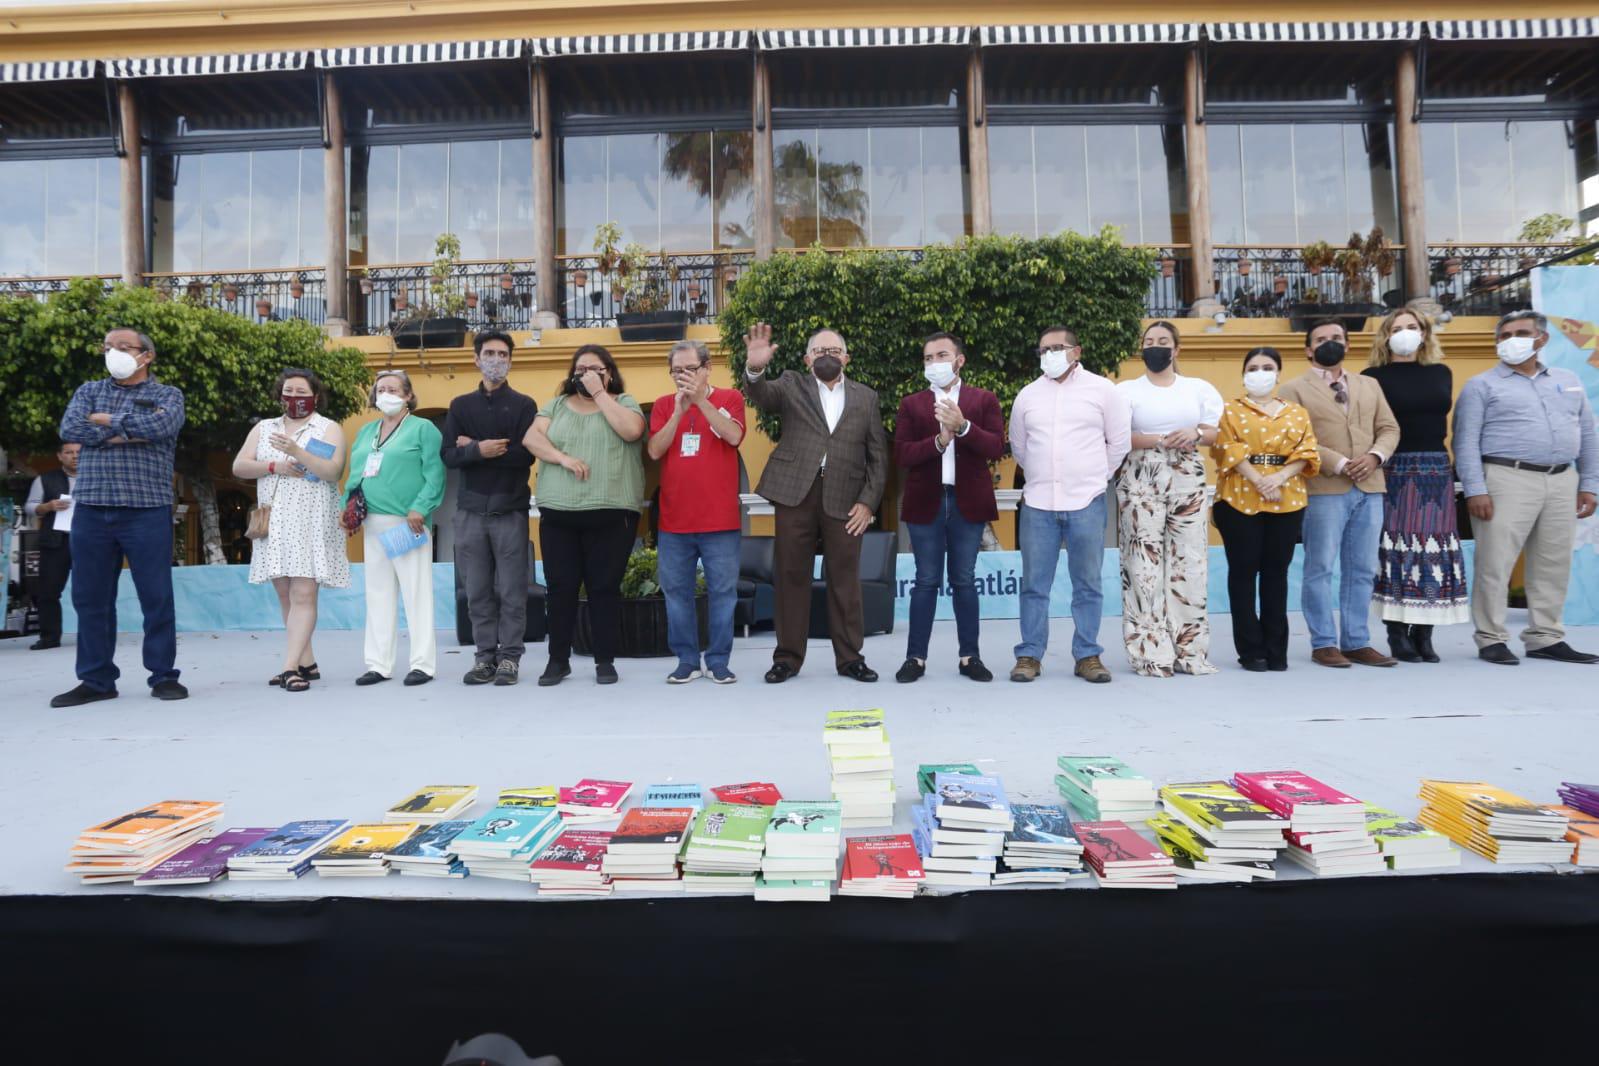 $!Reprocha Paco Ignacio Taibo II a la UAS, en arranque del Festival del Libro Mazatlán 2022